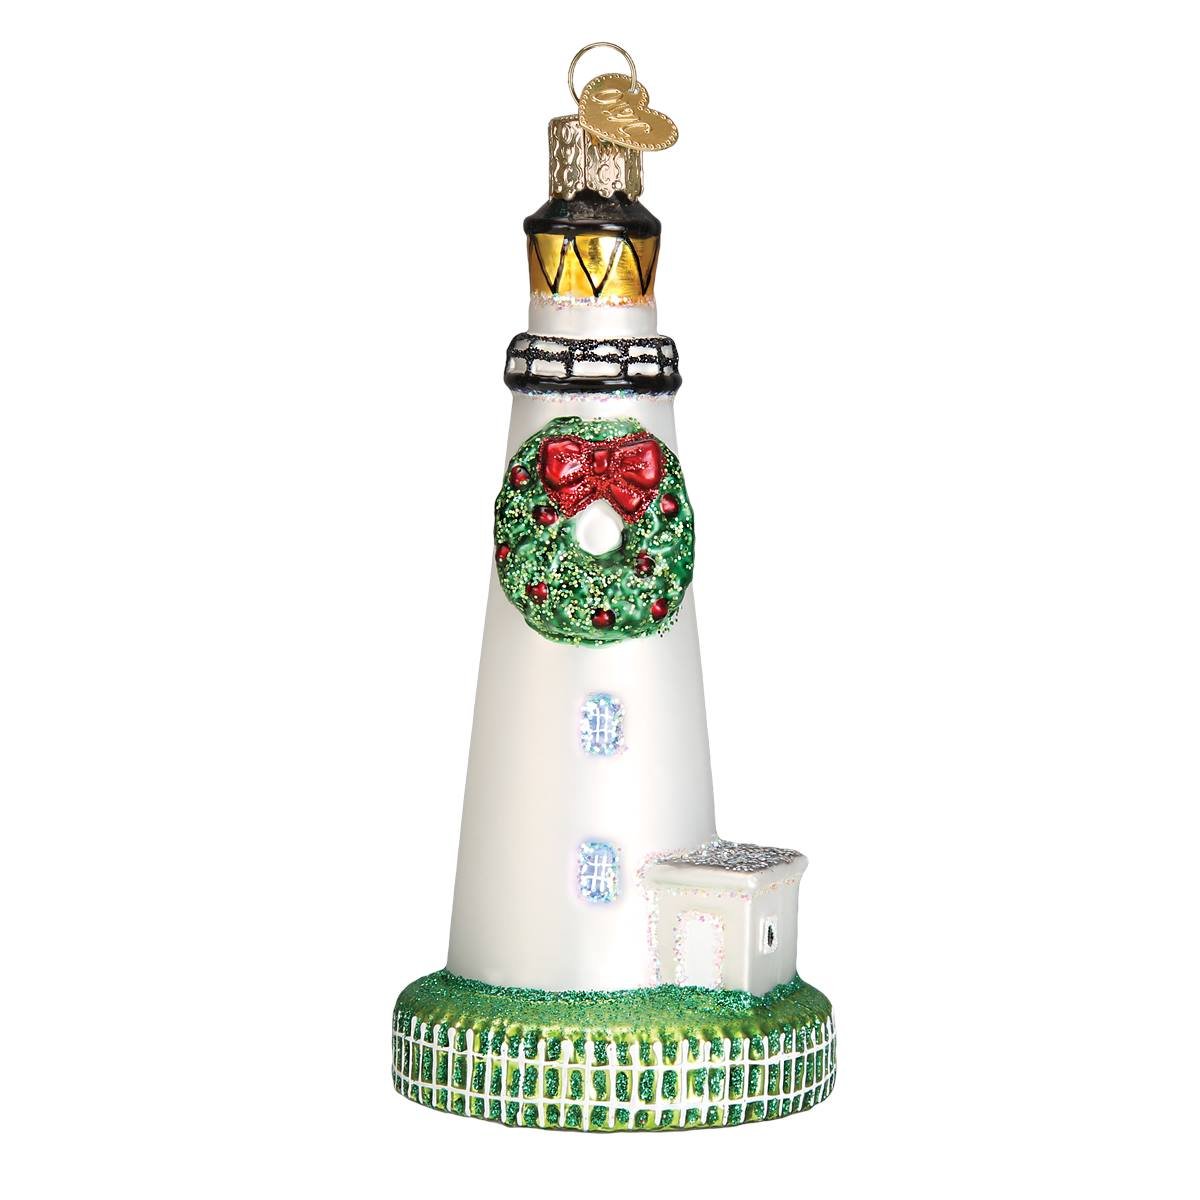 Ocracoke Lighthouse Ornament